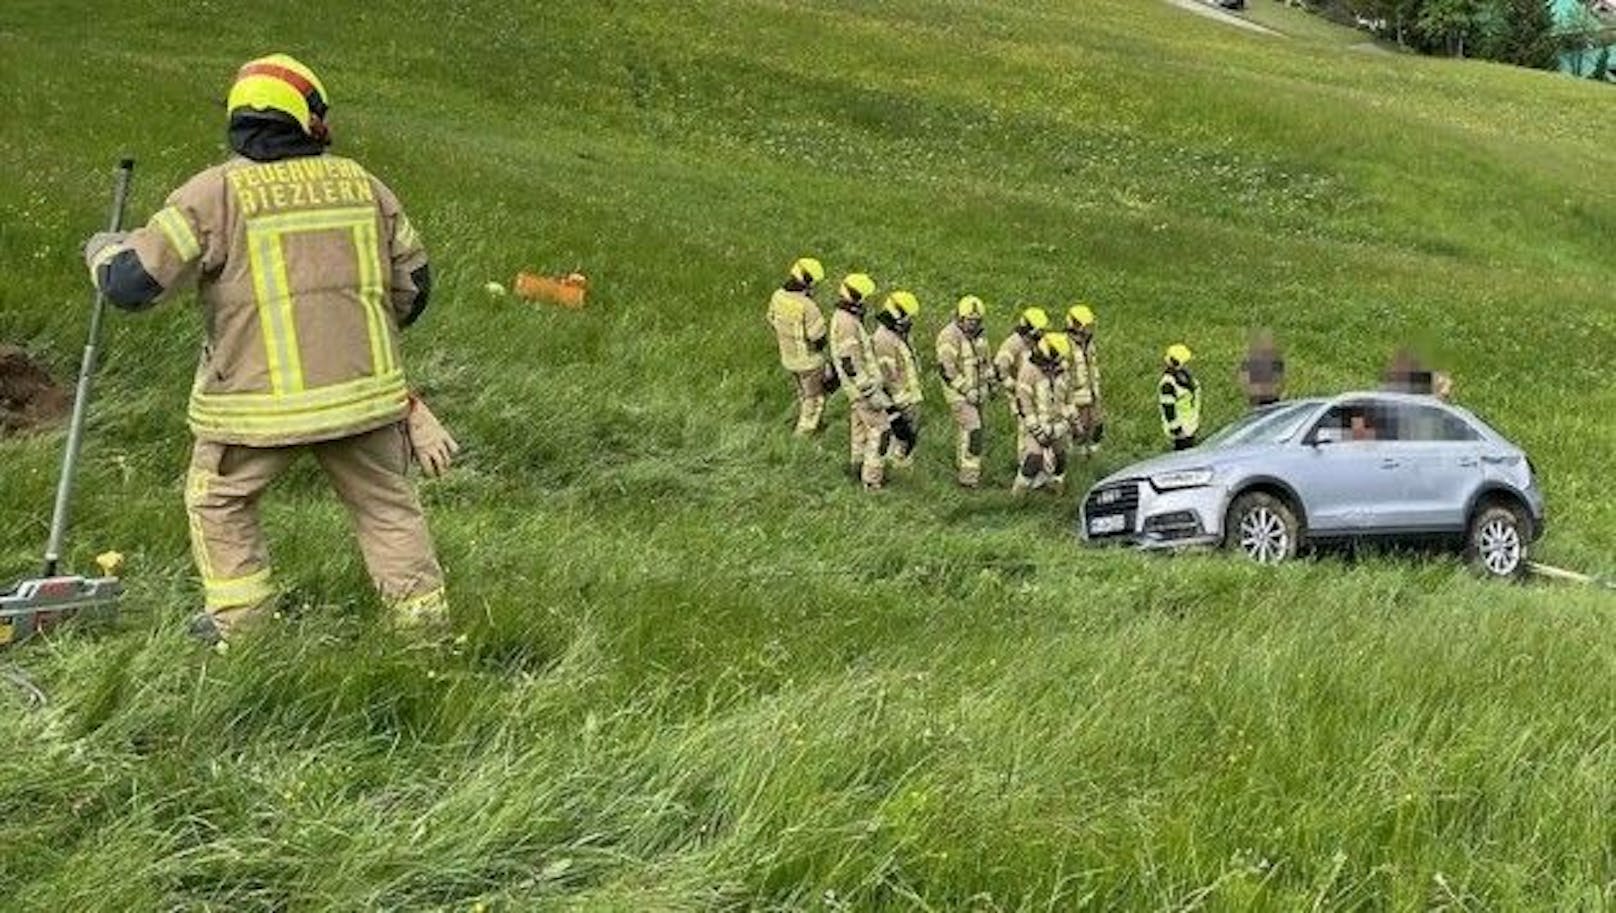 Die Feuerwehr bei der Bergung des abgestürzten Autos